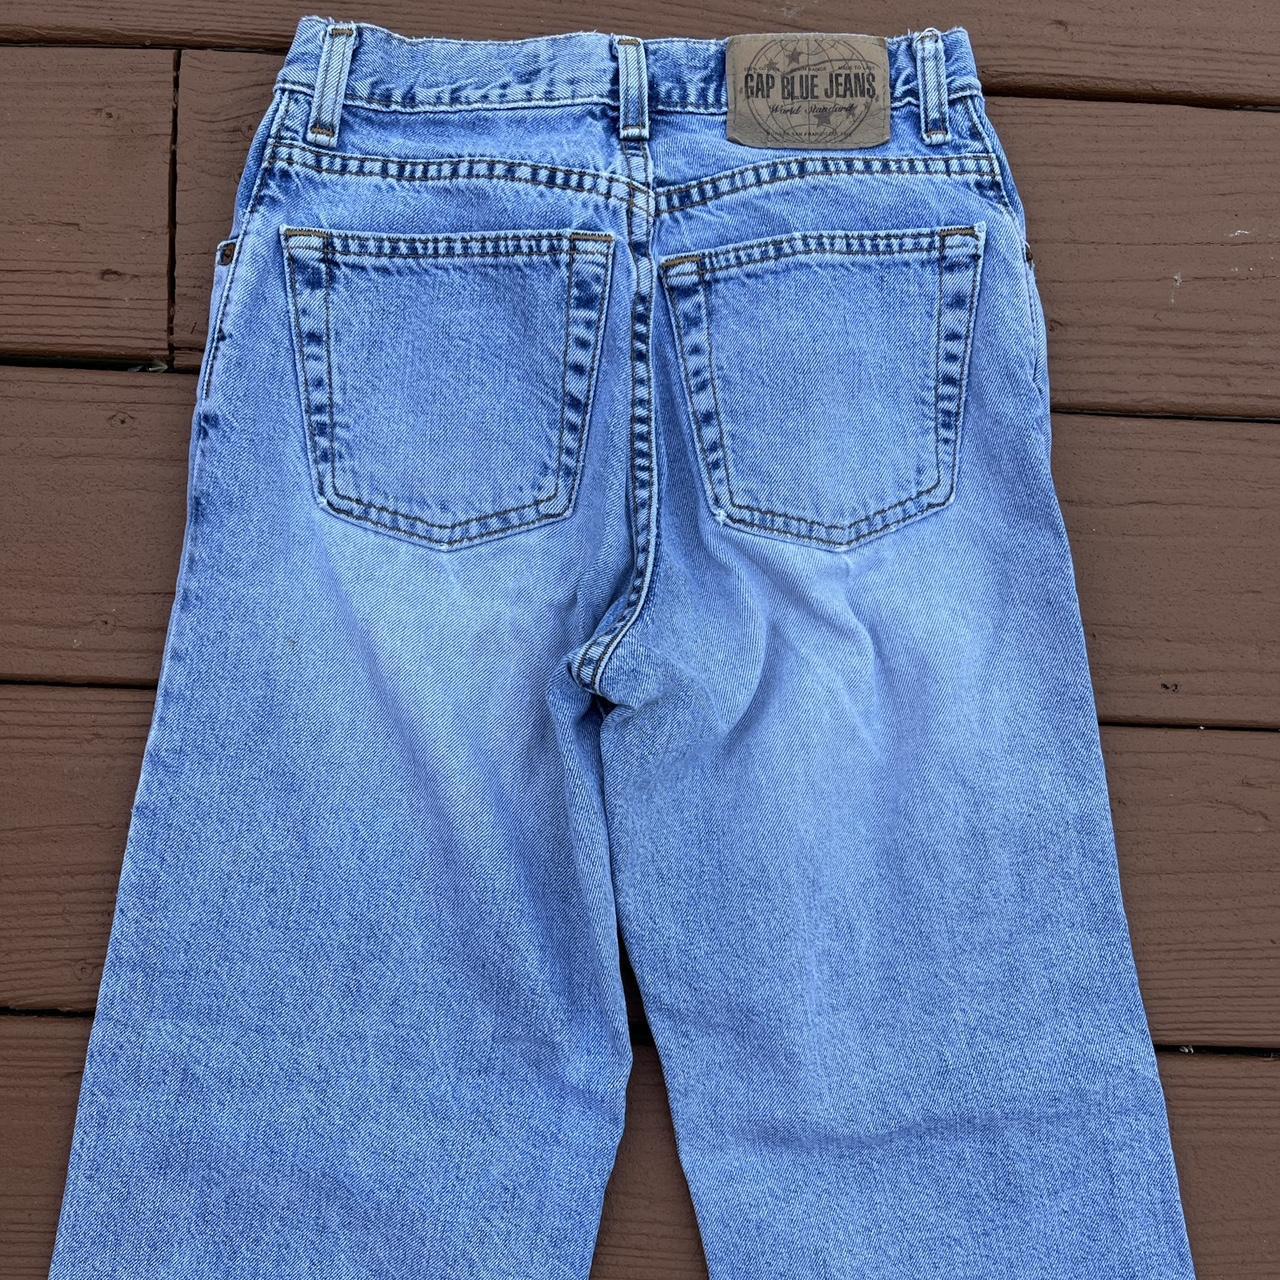 Vintage 1990s 90s Gap blue Jeans denim faded super... - Depop